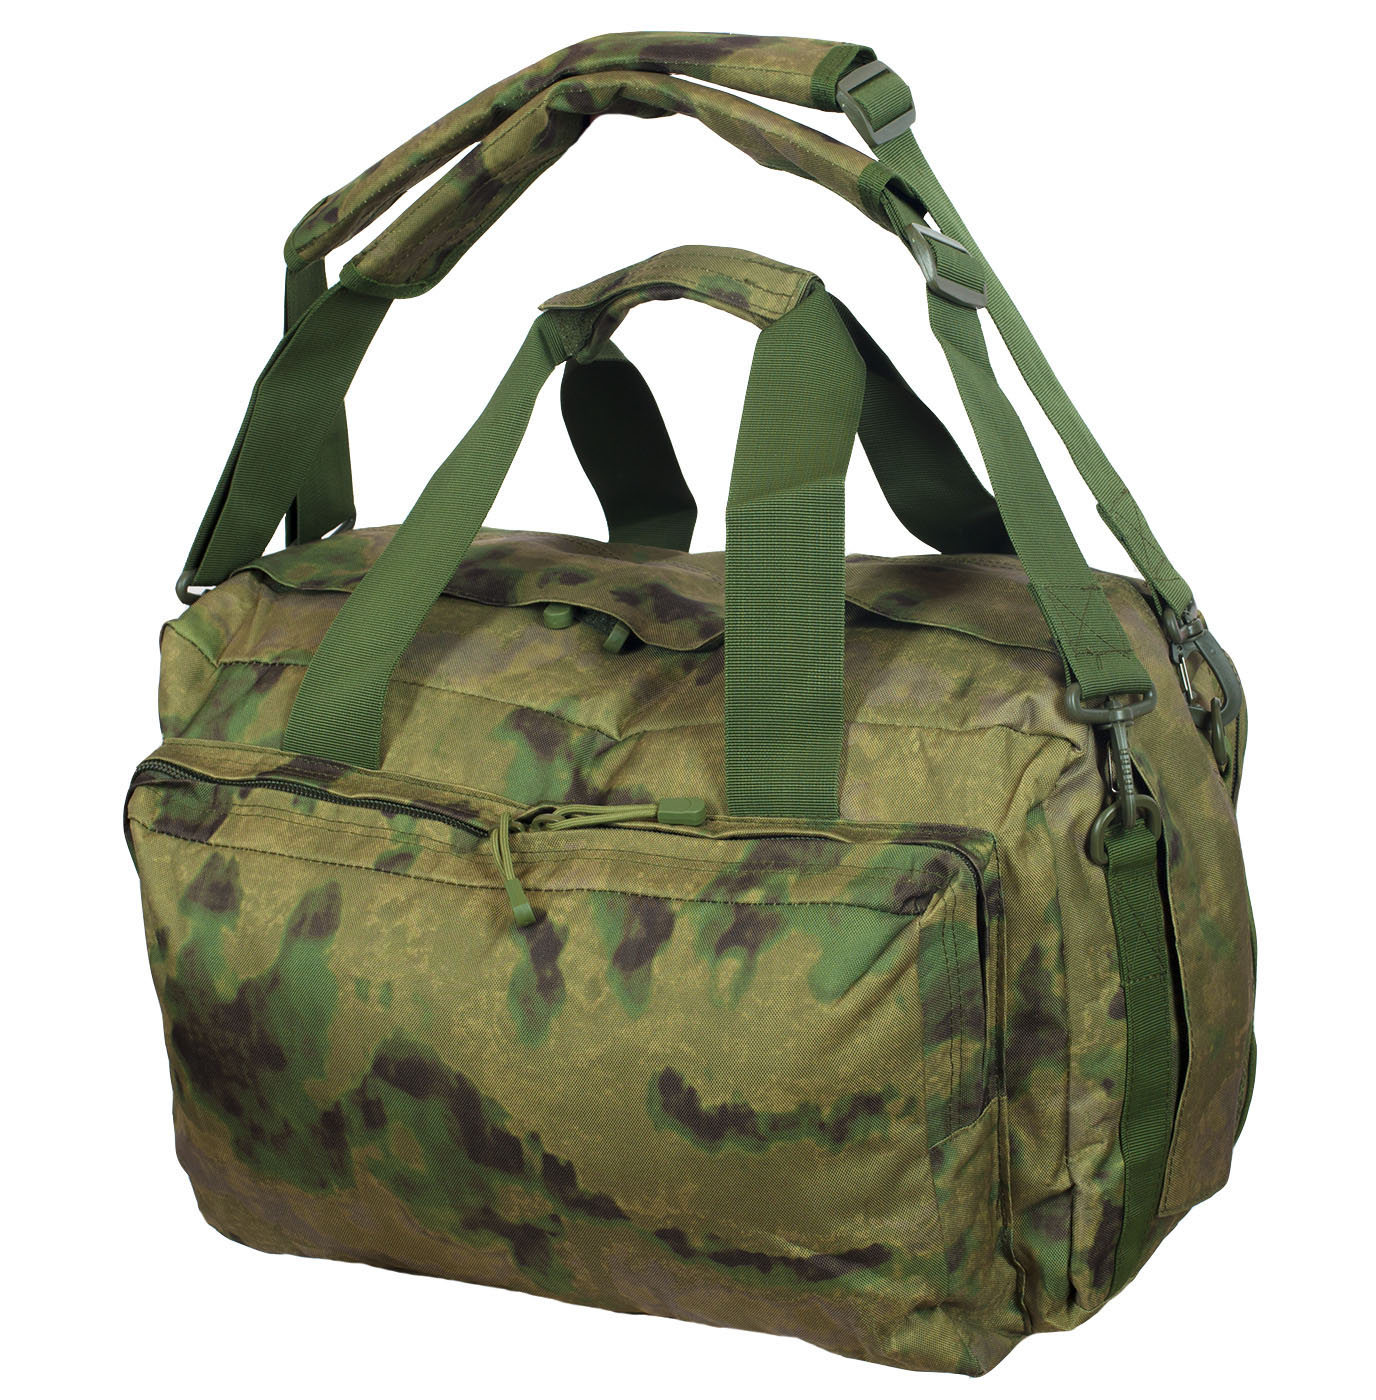 Заплечная камуфлированная сумка с нашивкой Танковые Войска 